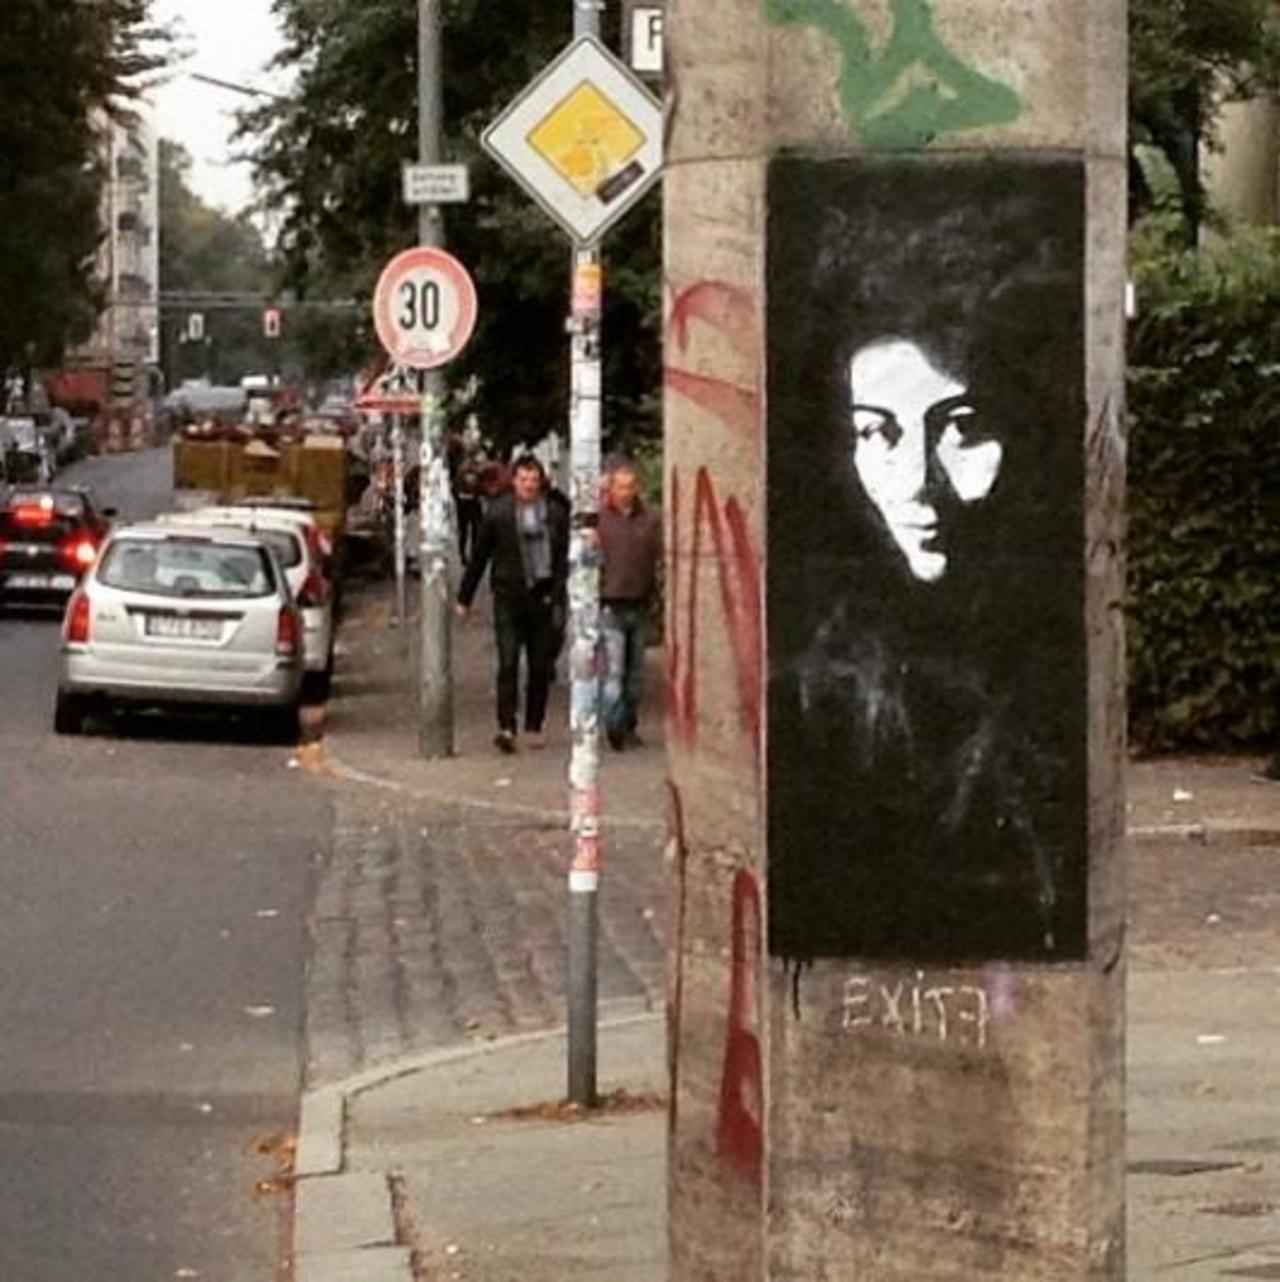 #berlin #berlinkreuzberg #streetart #streetartberlin #graffiti #graffitiberlin #landwehrkanal by yvettezette http://t.co/ENFAnsJI72